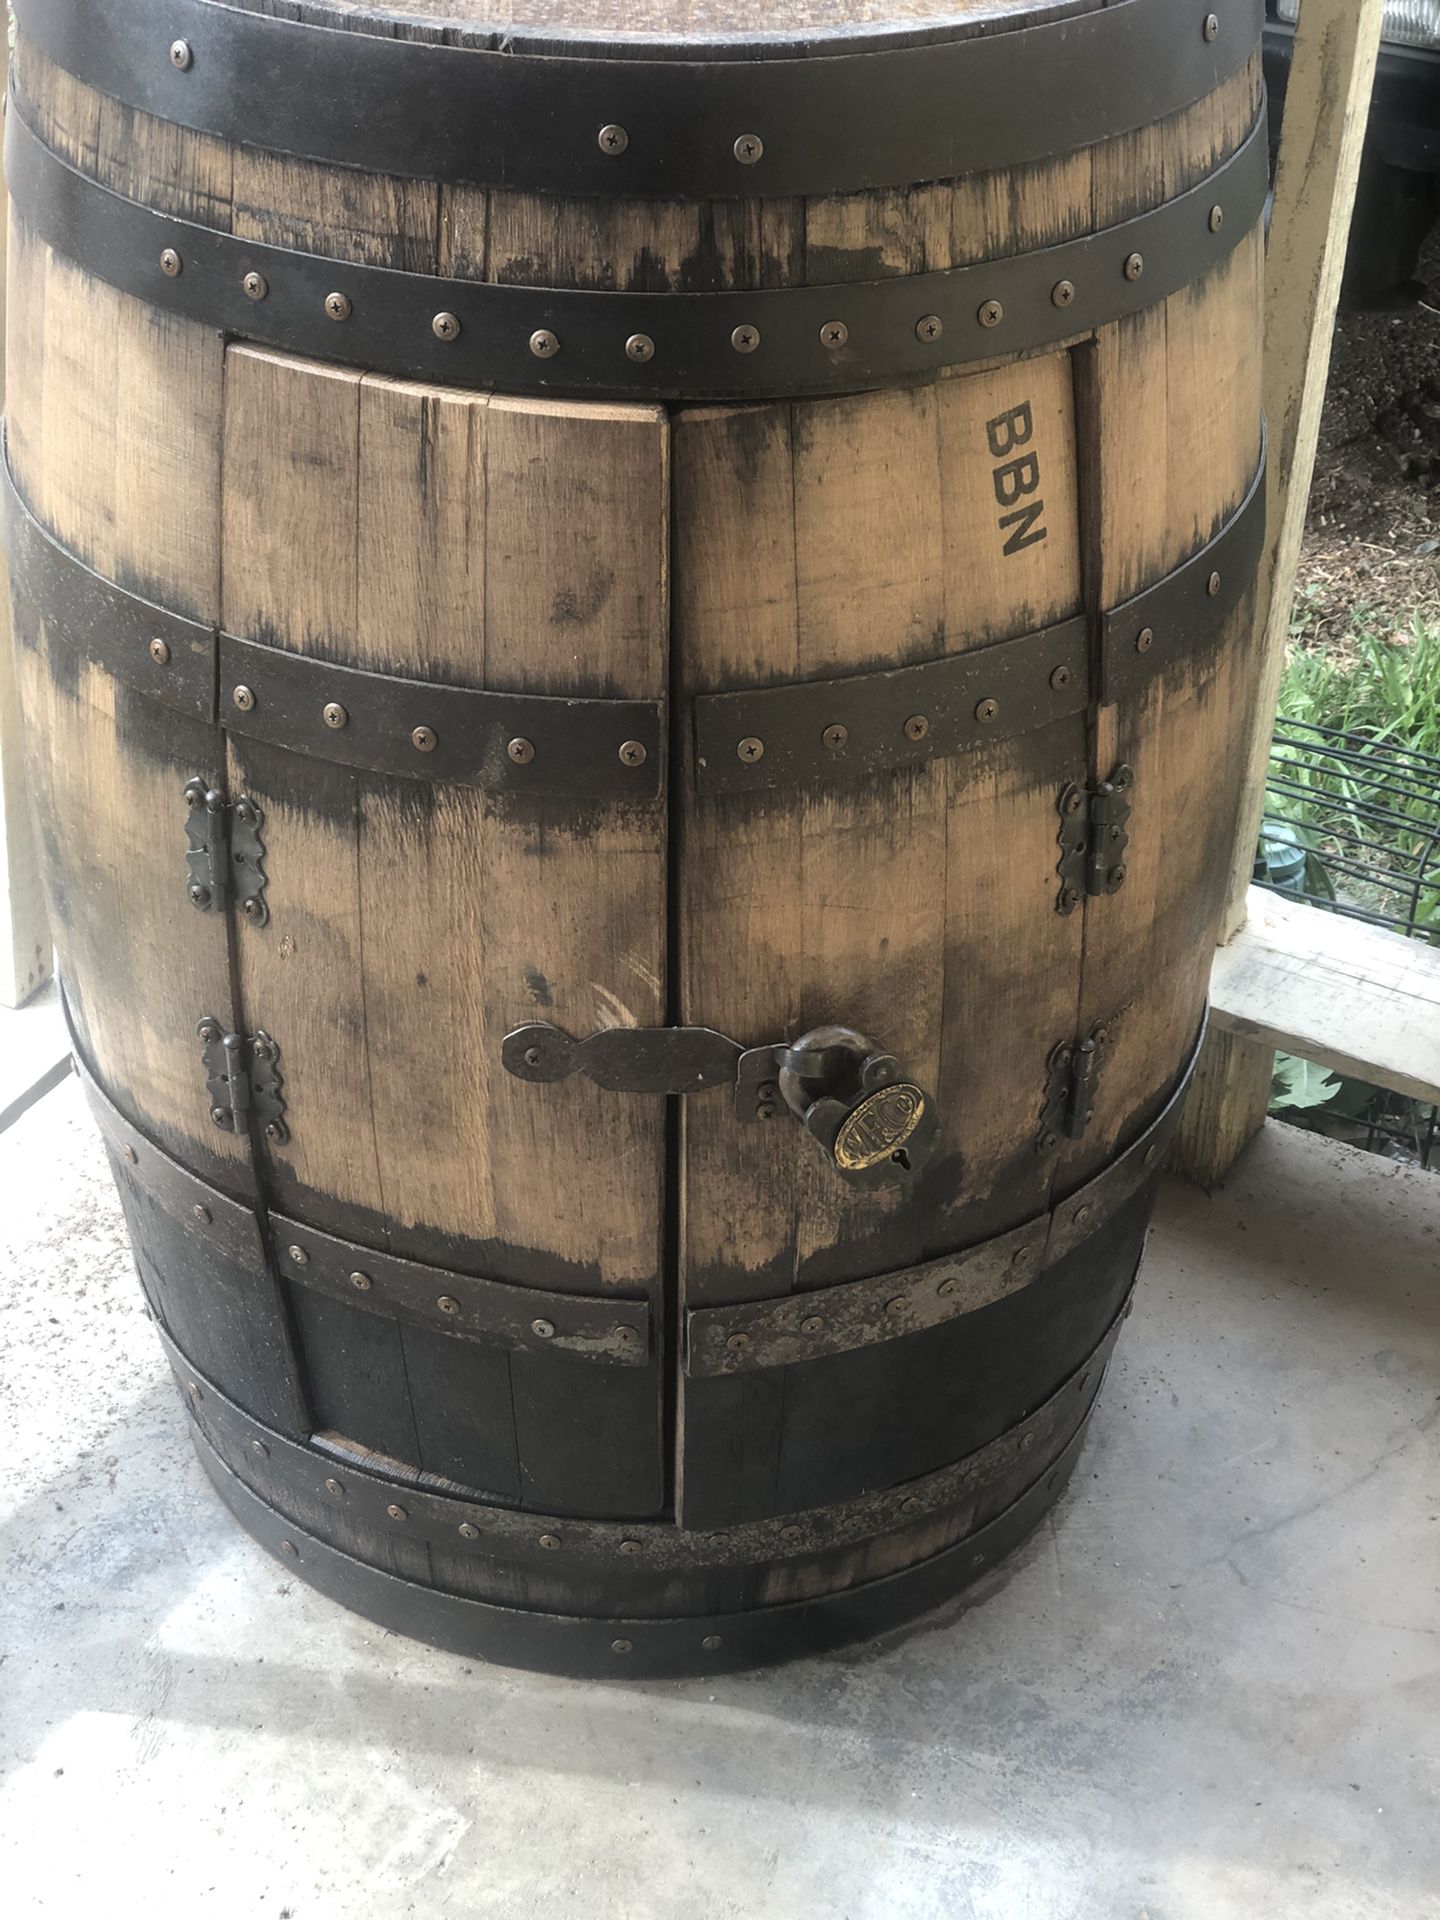 Whiskey stash box barrel